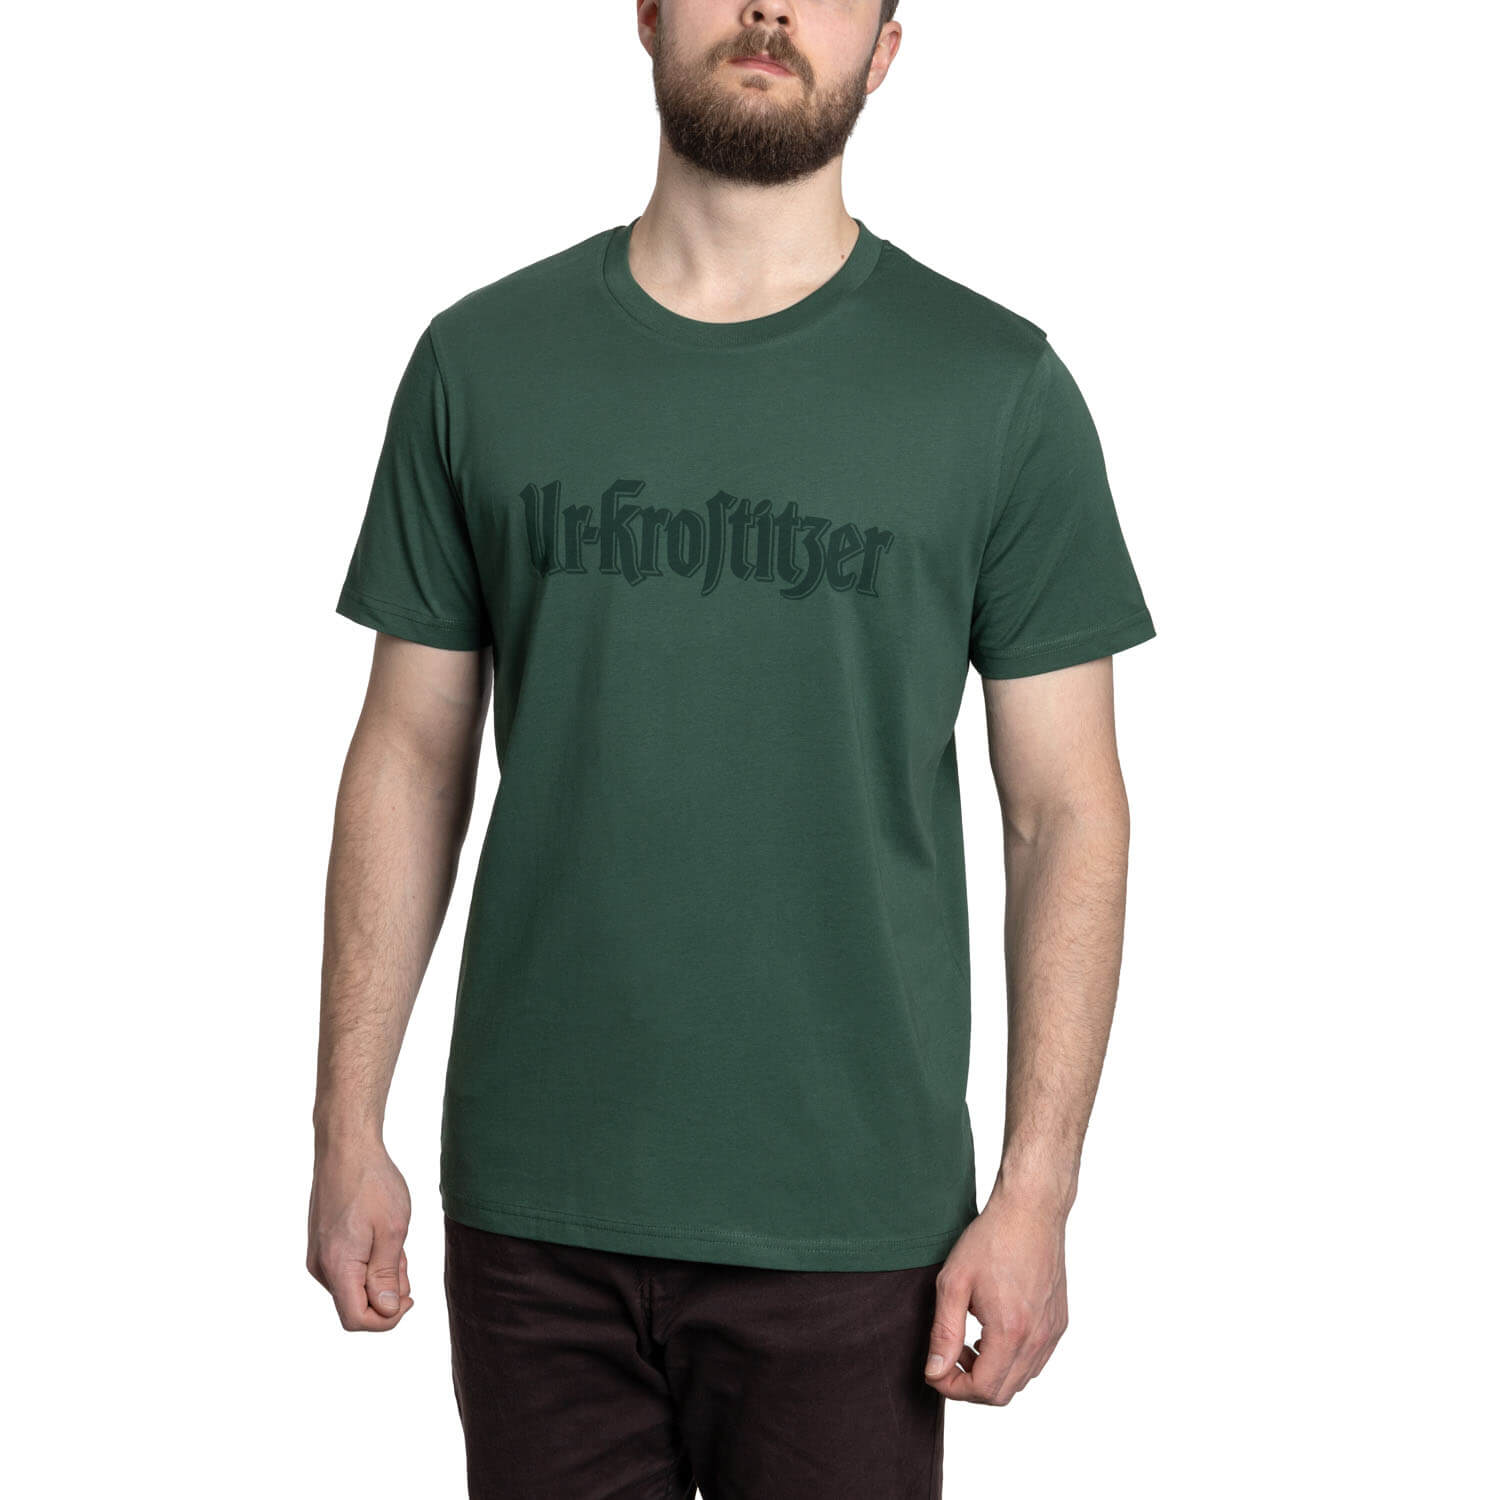 Ur-Krostitzer T-Shirt "Schriftzug" grün Vorderansicht